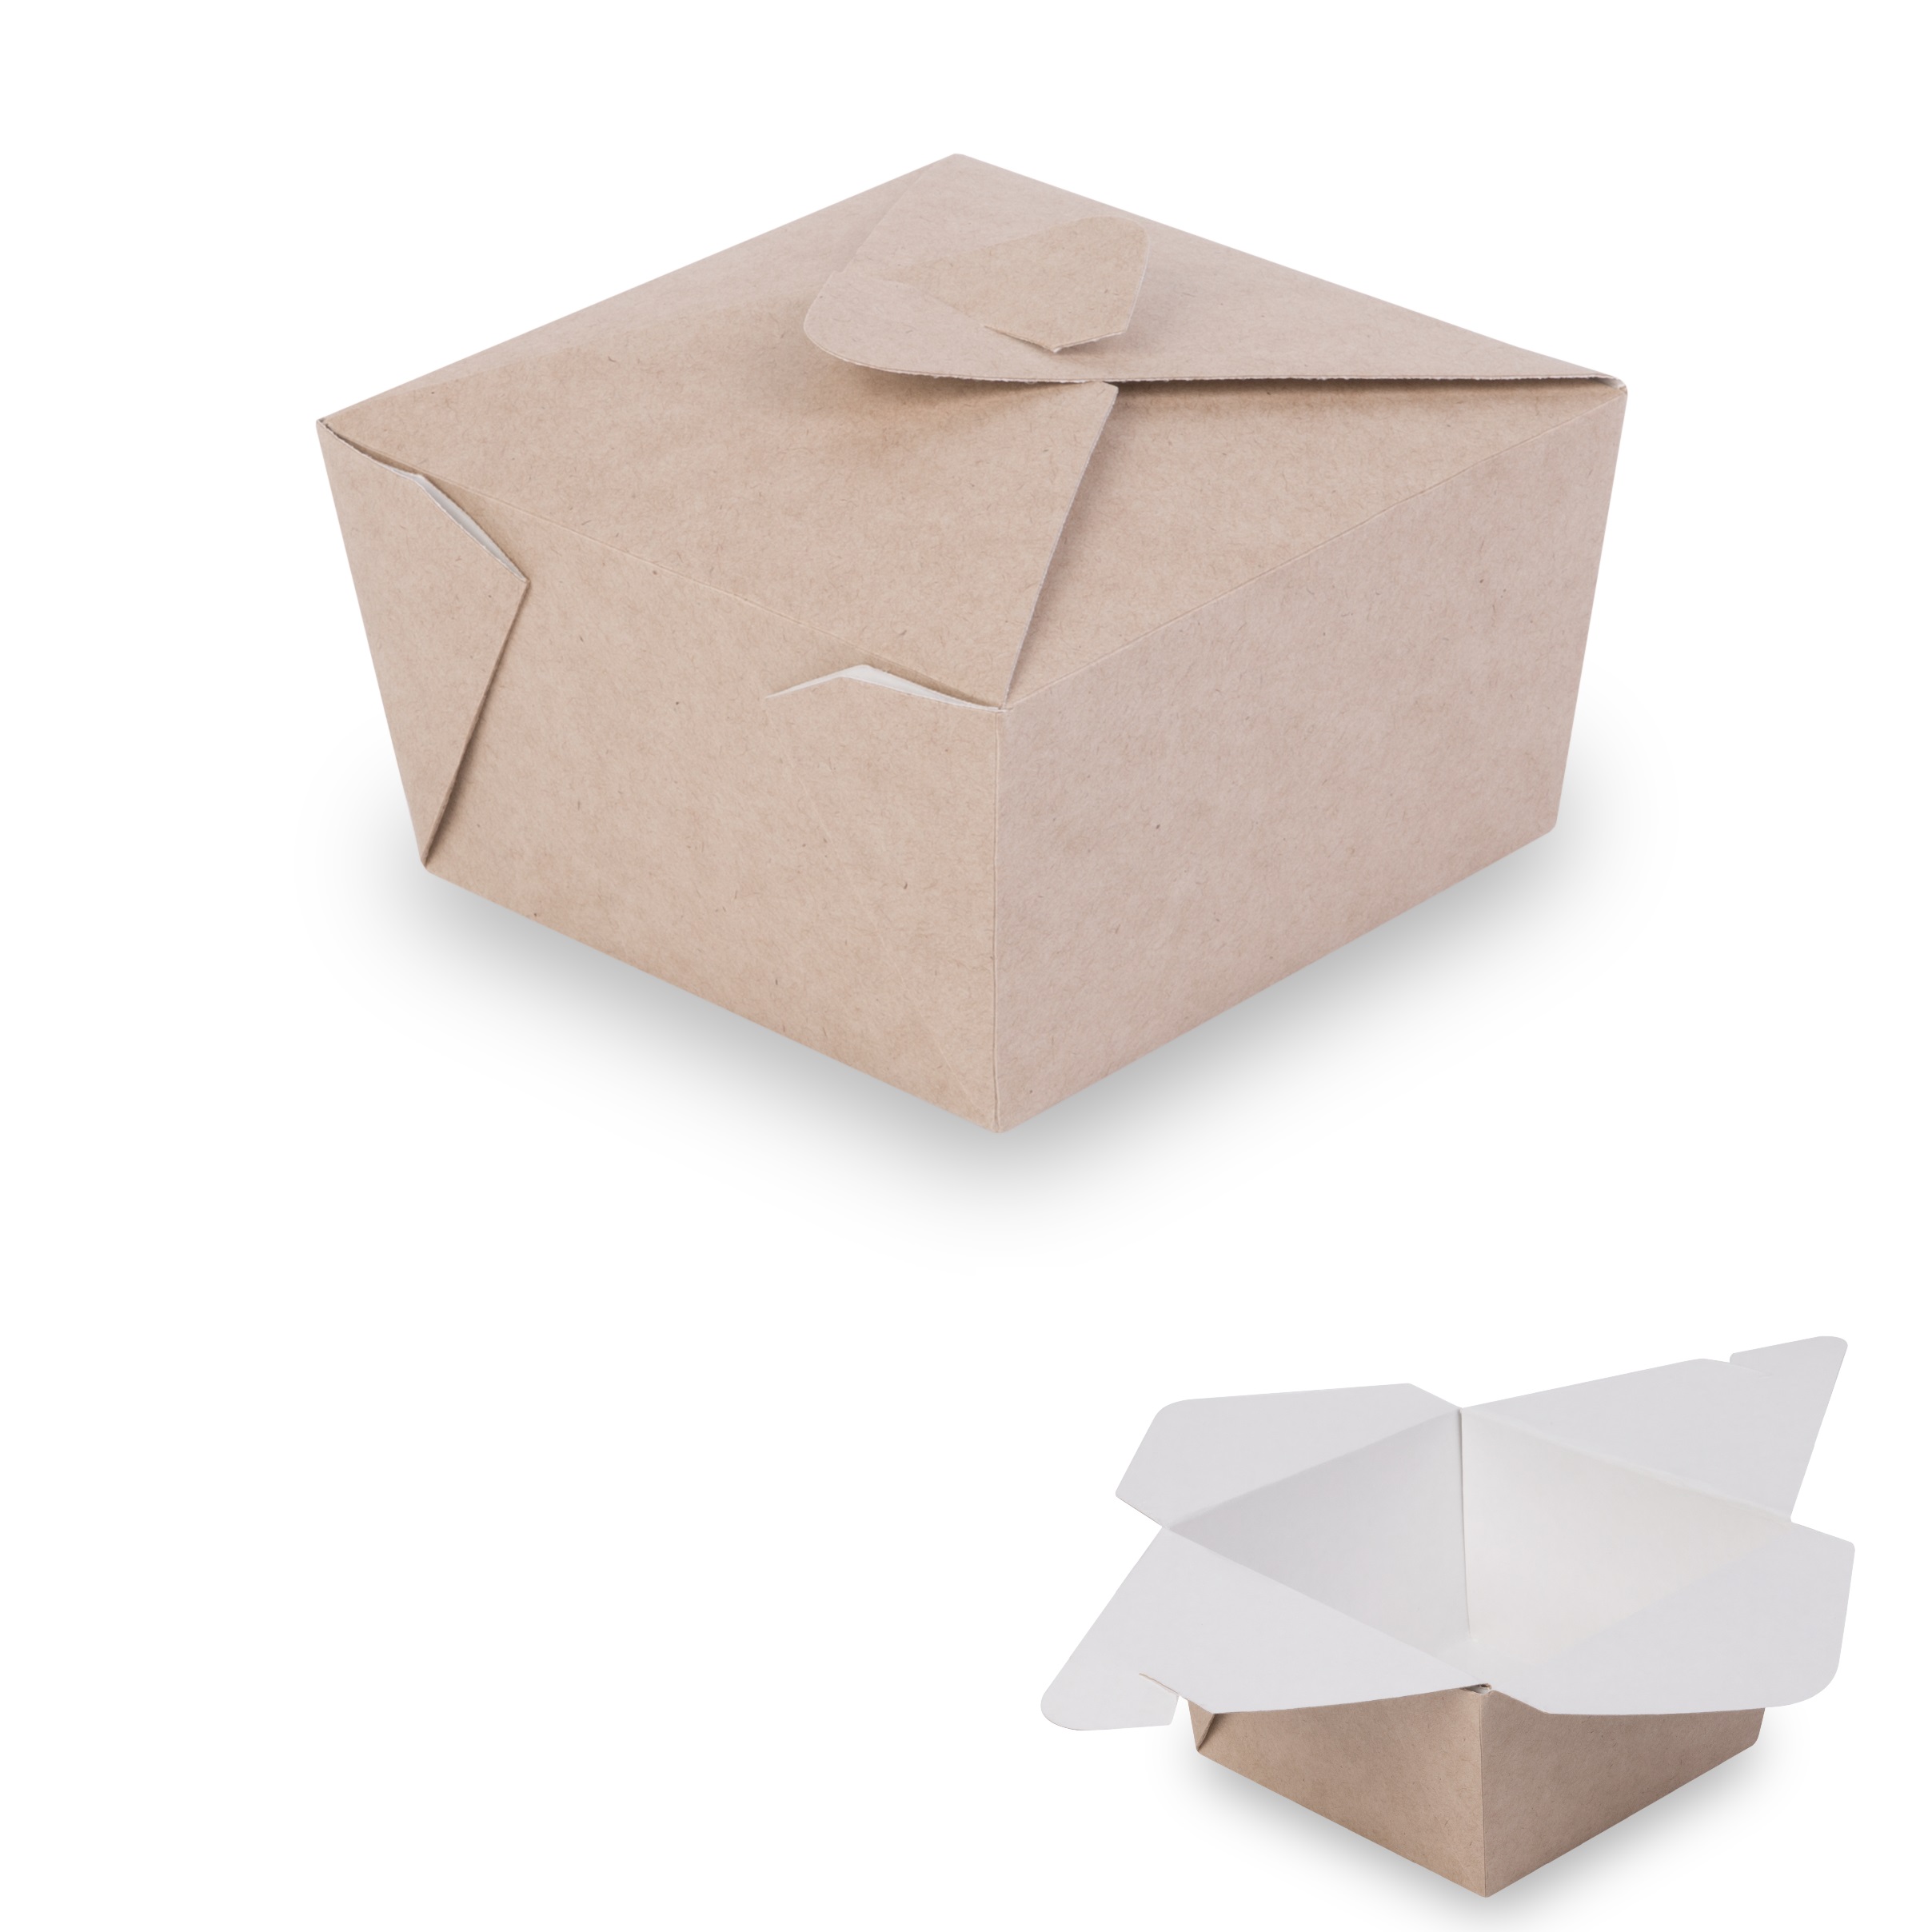 OSQ Meal Box S Упаковка универсальная 10,0х10,0х6,5см